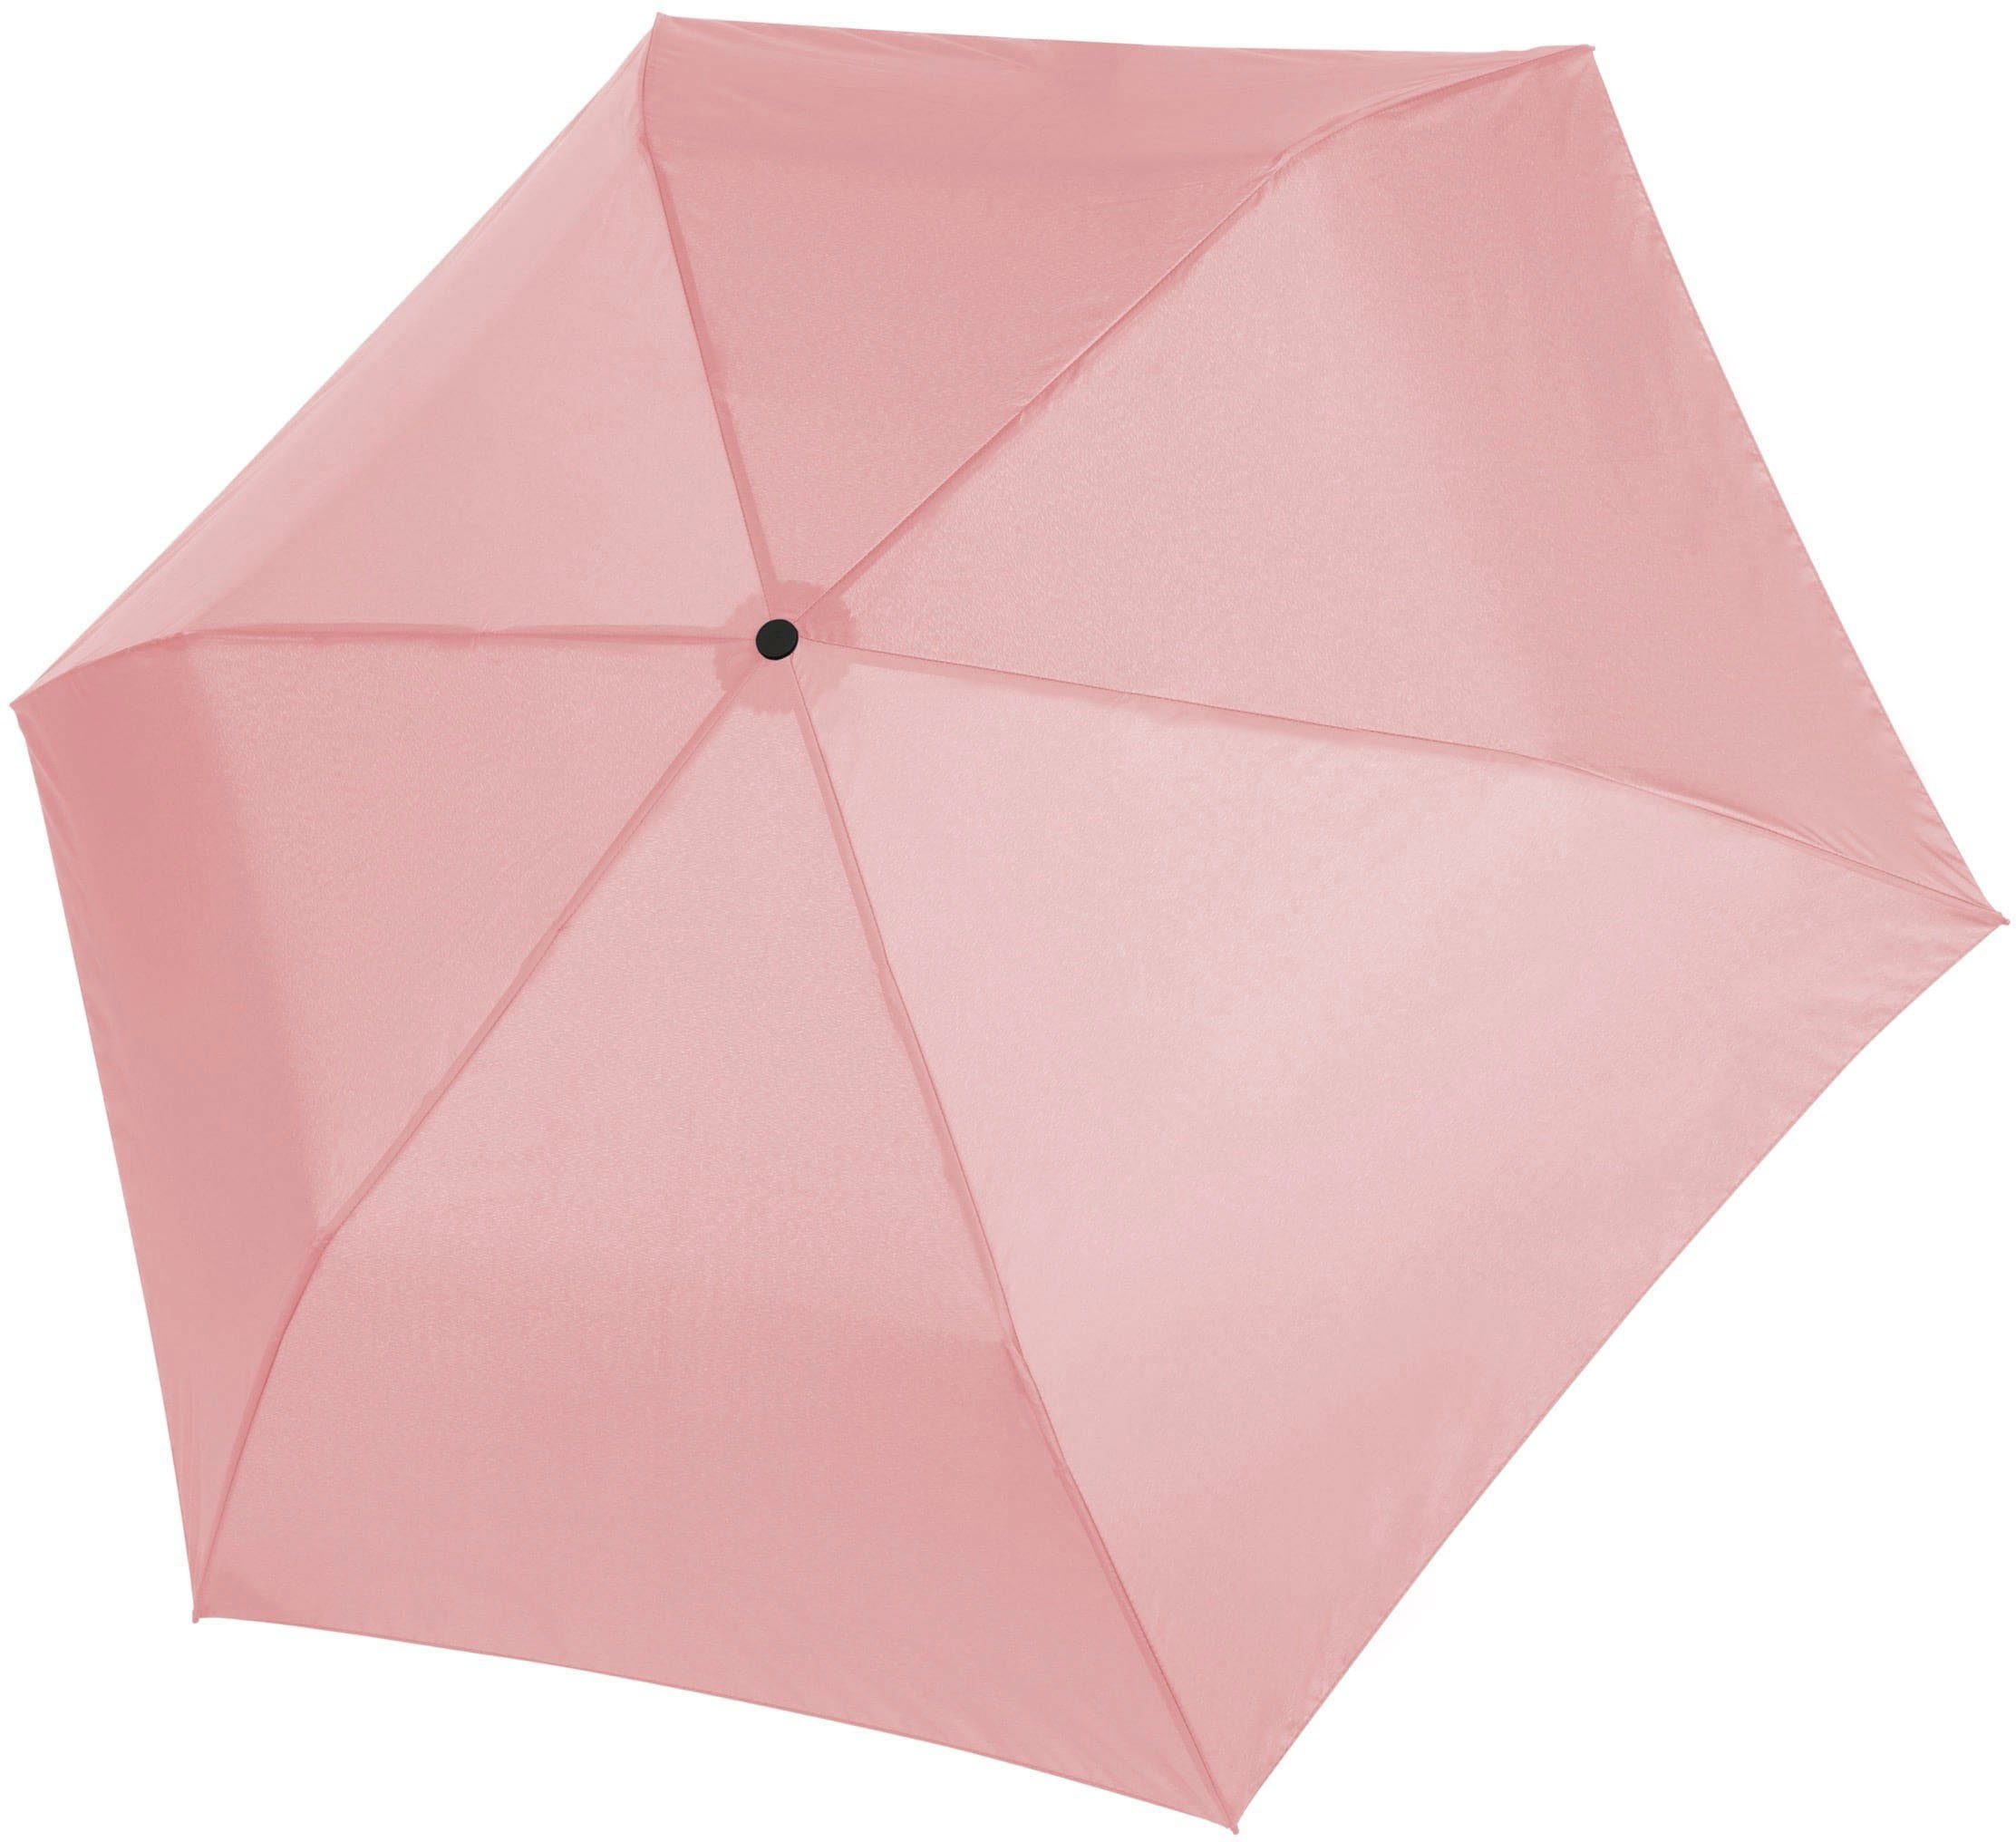 doppler® Taschenregenschirm »zero,99 zero,99 von rose rose shadow, uni, shadow« uni, Regenschirm doppler Ultraleichter